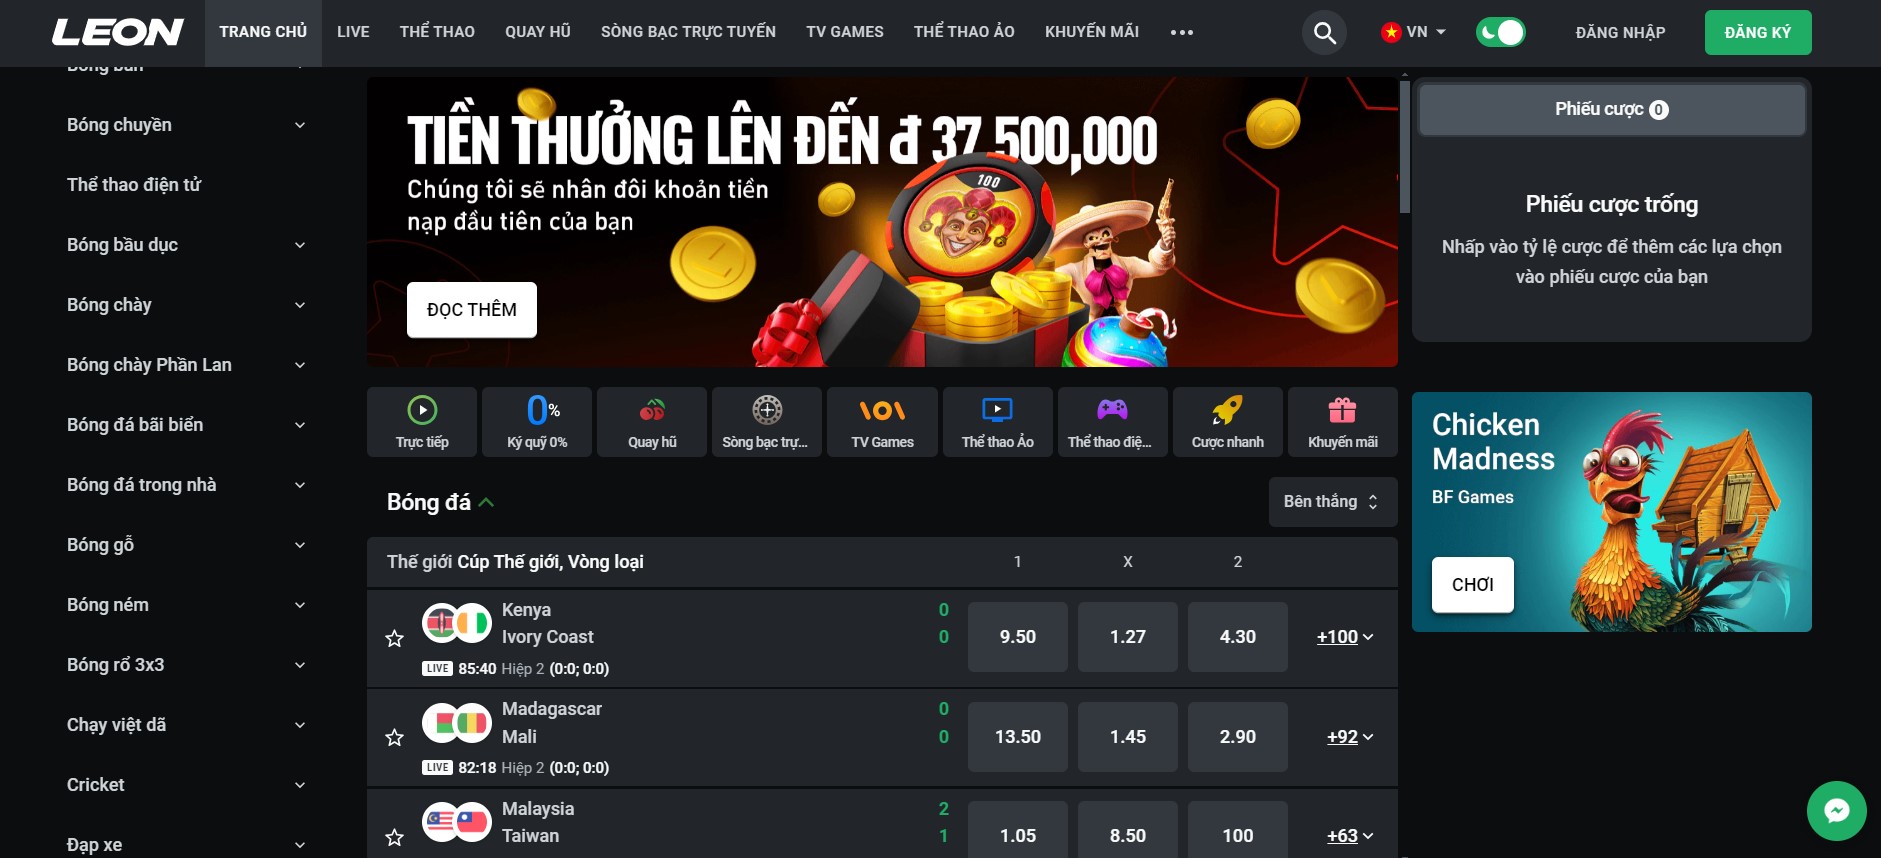 Leonbet là nền tảng cá cược thể thao và sòng bạc trực tuyến hàng đầu tại Việt Nam. Với hơn 4.000 trò chơi quay hũ, các sự kiện thể thao trực tiếp và các trò chơi sòng bạc như roulette và blackjack, Leonbet mang đến sự đa dạng và phong phú cho người chơi. Giao diện thân thiện, dễ sử dụng giúp người chơi dễ dàng tìm kiếm và tham gia các trò chơi yêu thích.